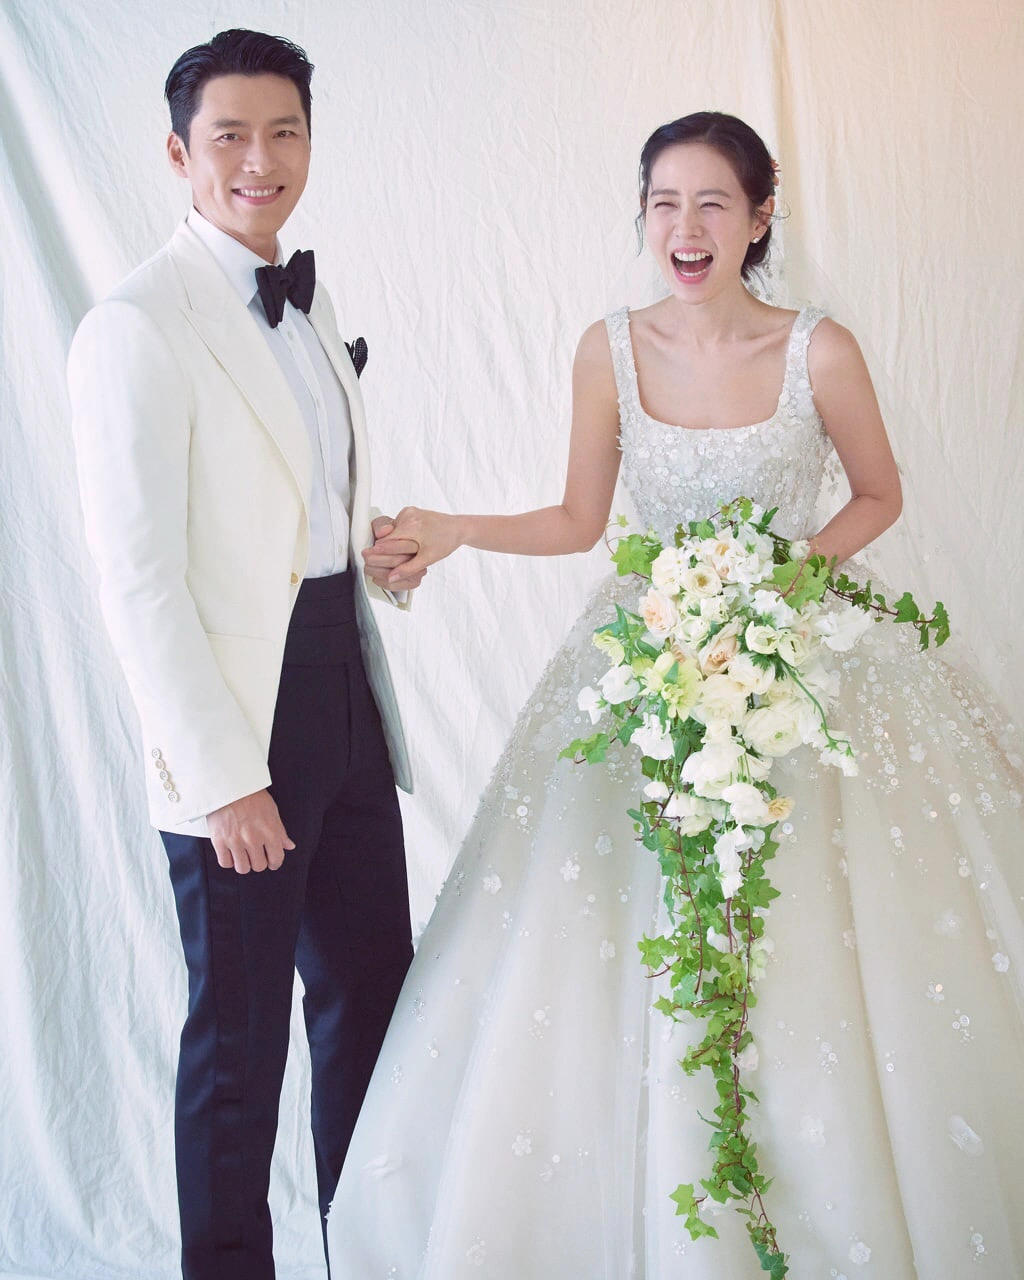 Son Ye-jin and Hyun Bin Wedding Photo